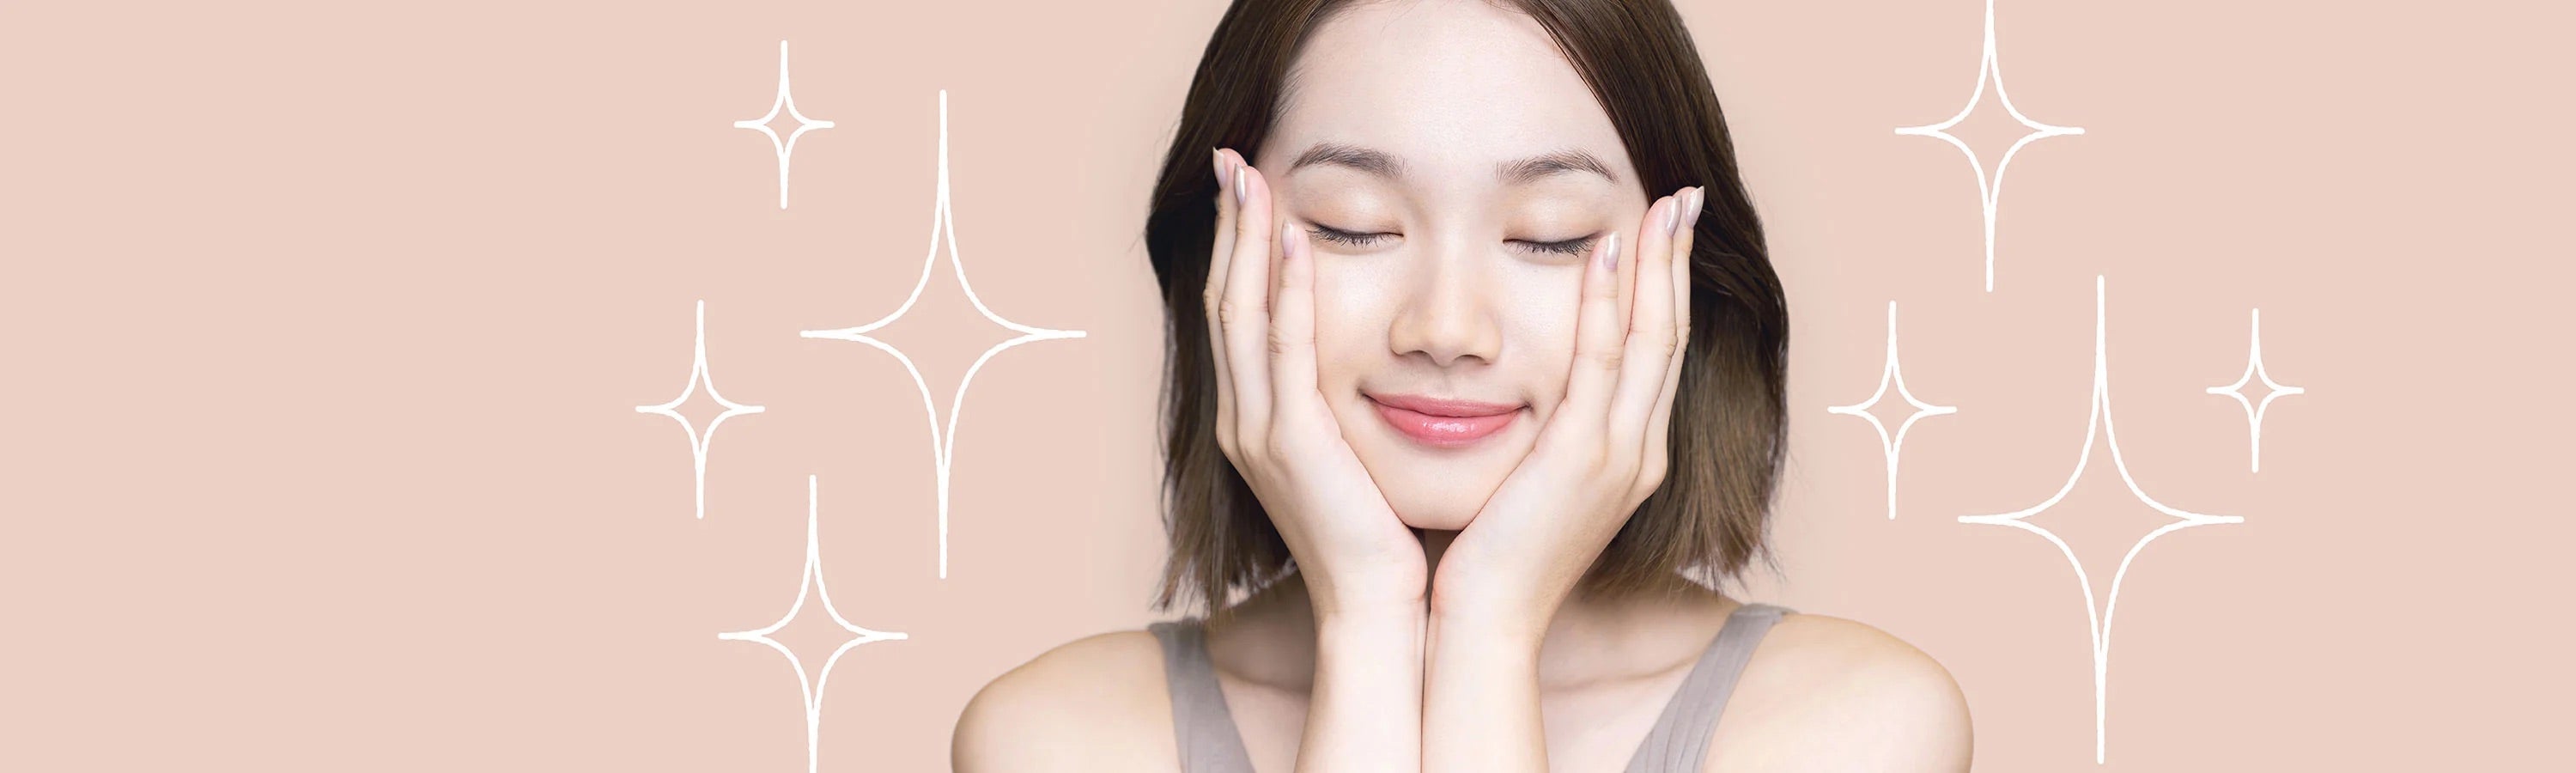 Migliori Prodotti di Skincare Coreana - Shop Online NuvoleBlu